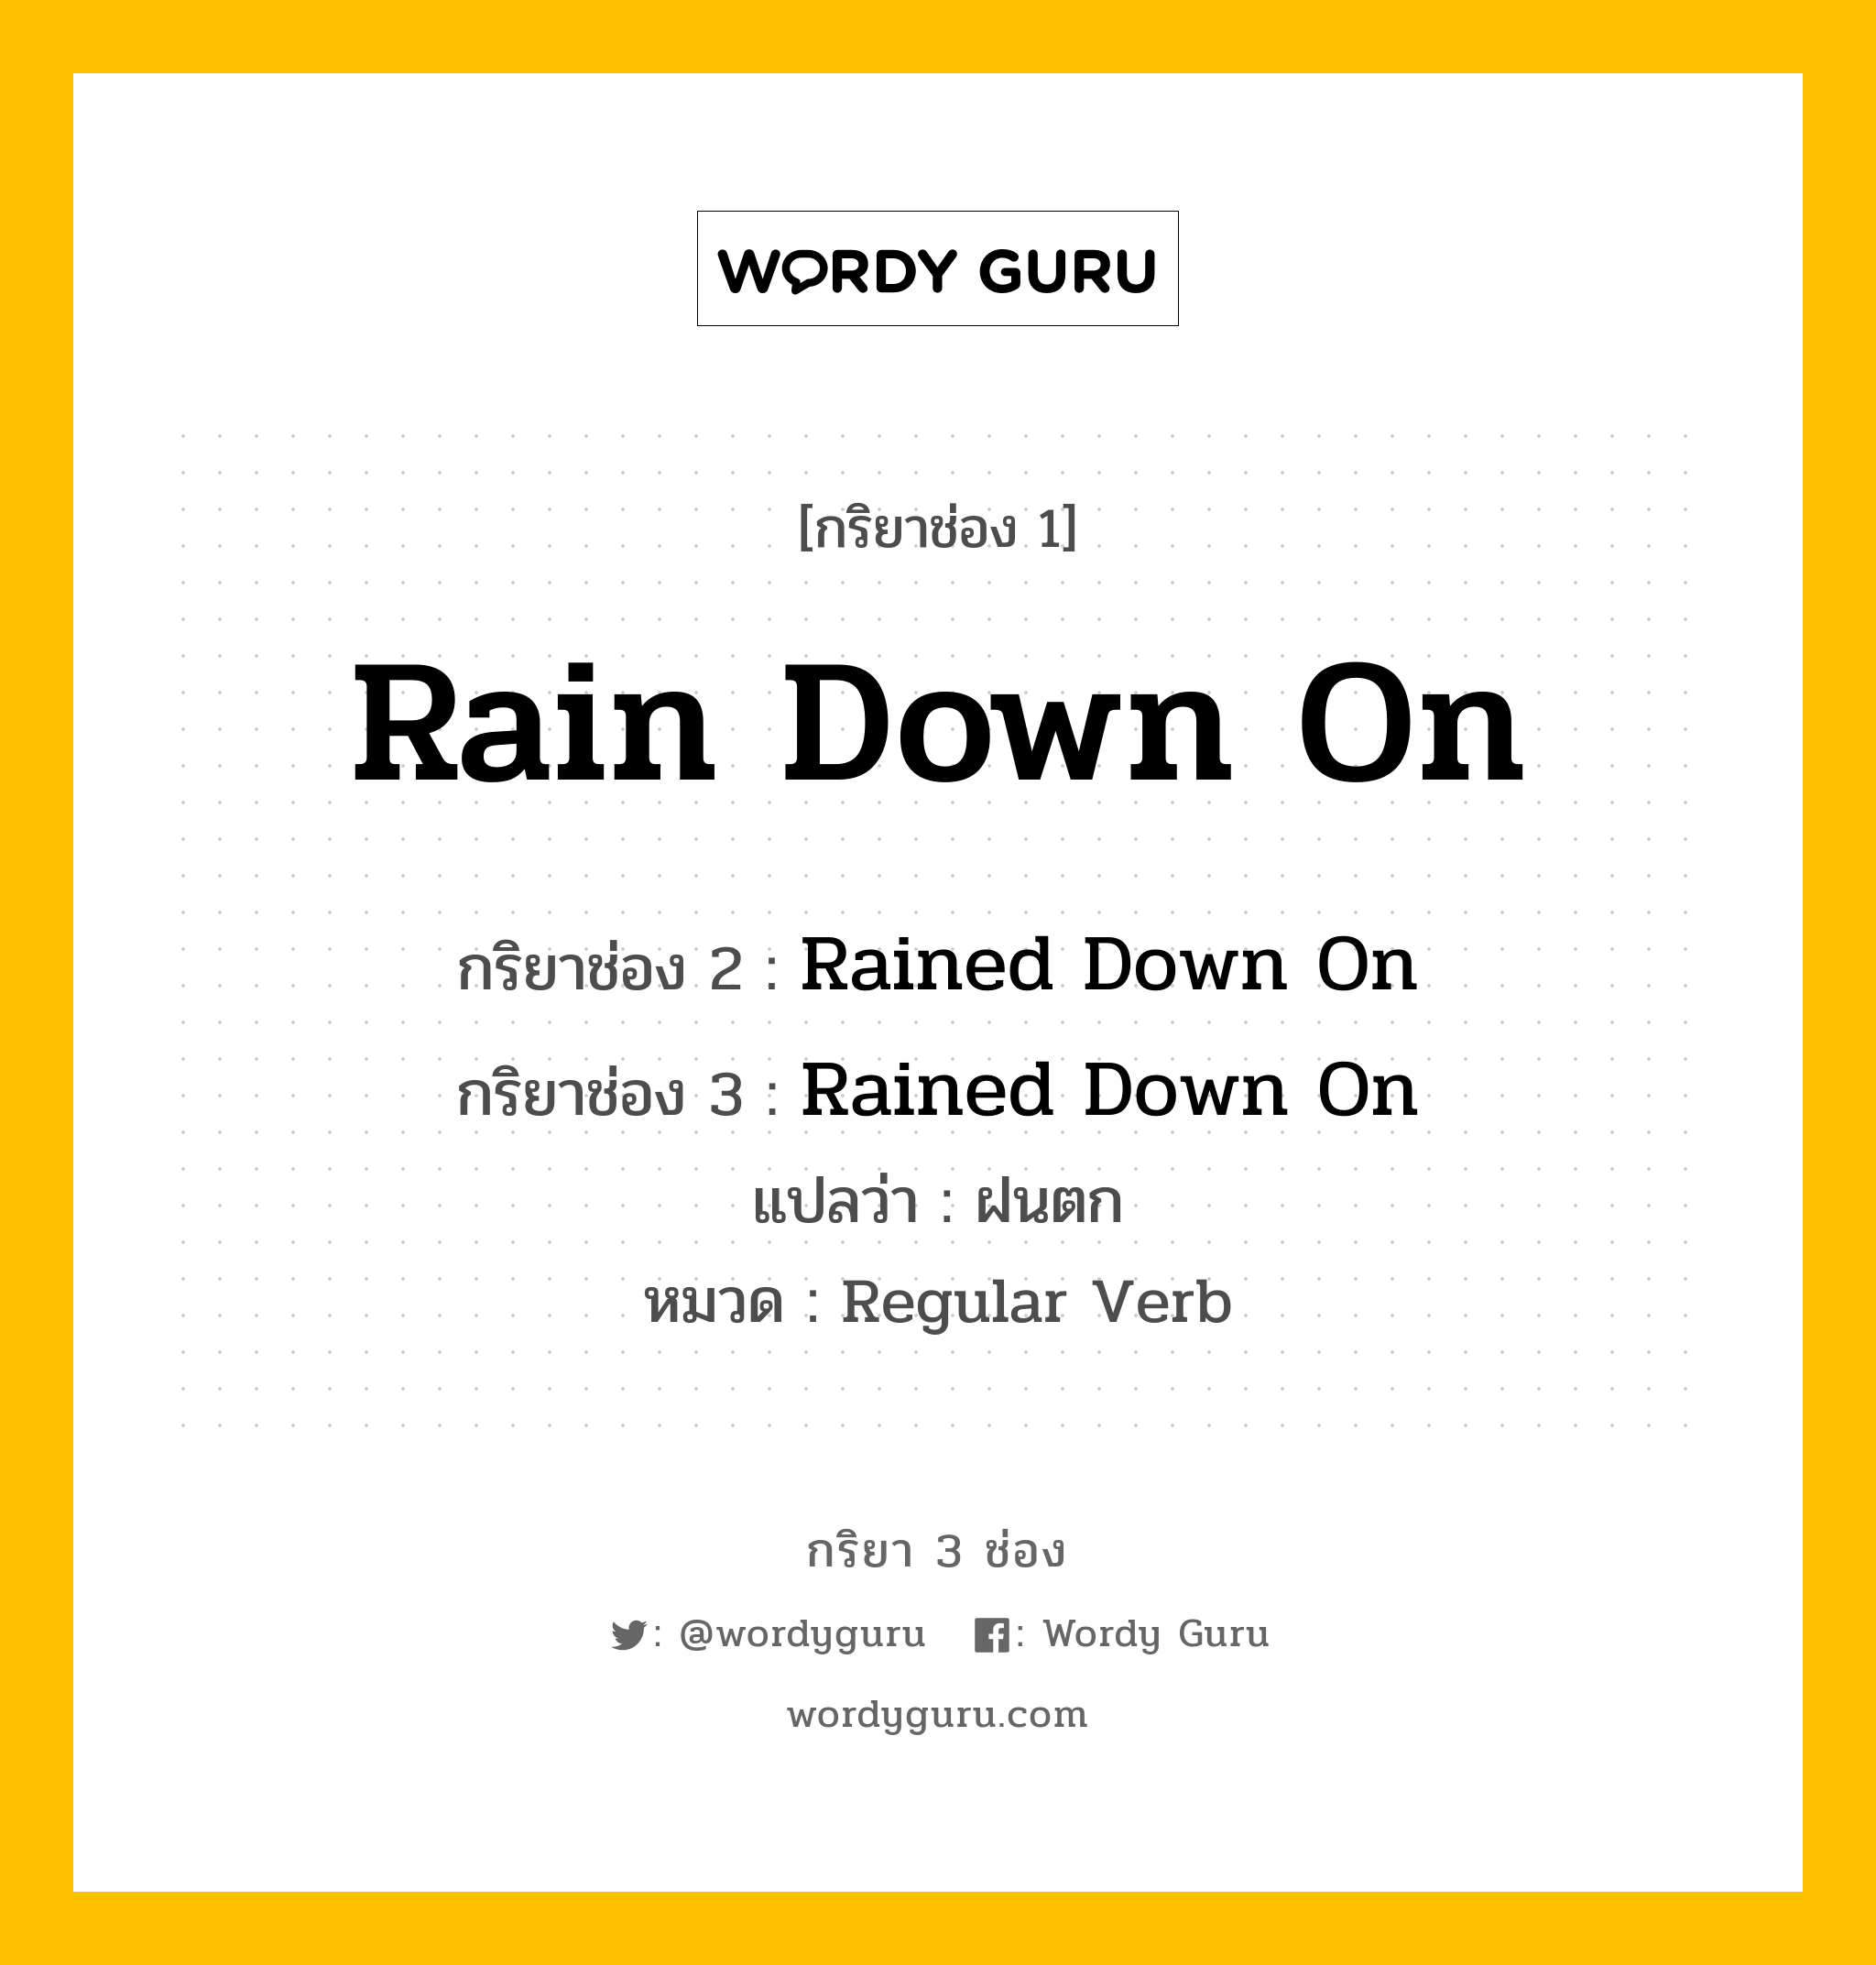 กริยา 3 ช่อง ของ Rain Down On คืออะไร?, กริยาช่อง 1 Rain Down On กริยาช่อง 2 Rained Down On กริยาช่อง 3 Rained Down On แปลว่า ฝนตก หมวด Regular Verb หมวด Regular Verb